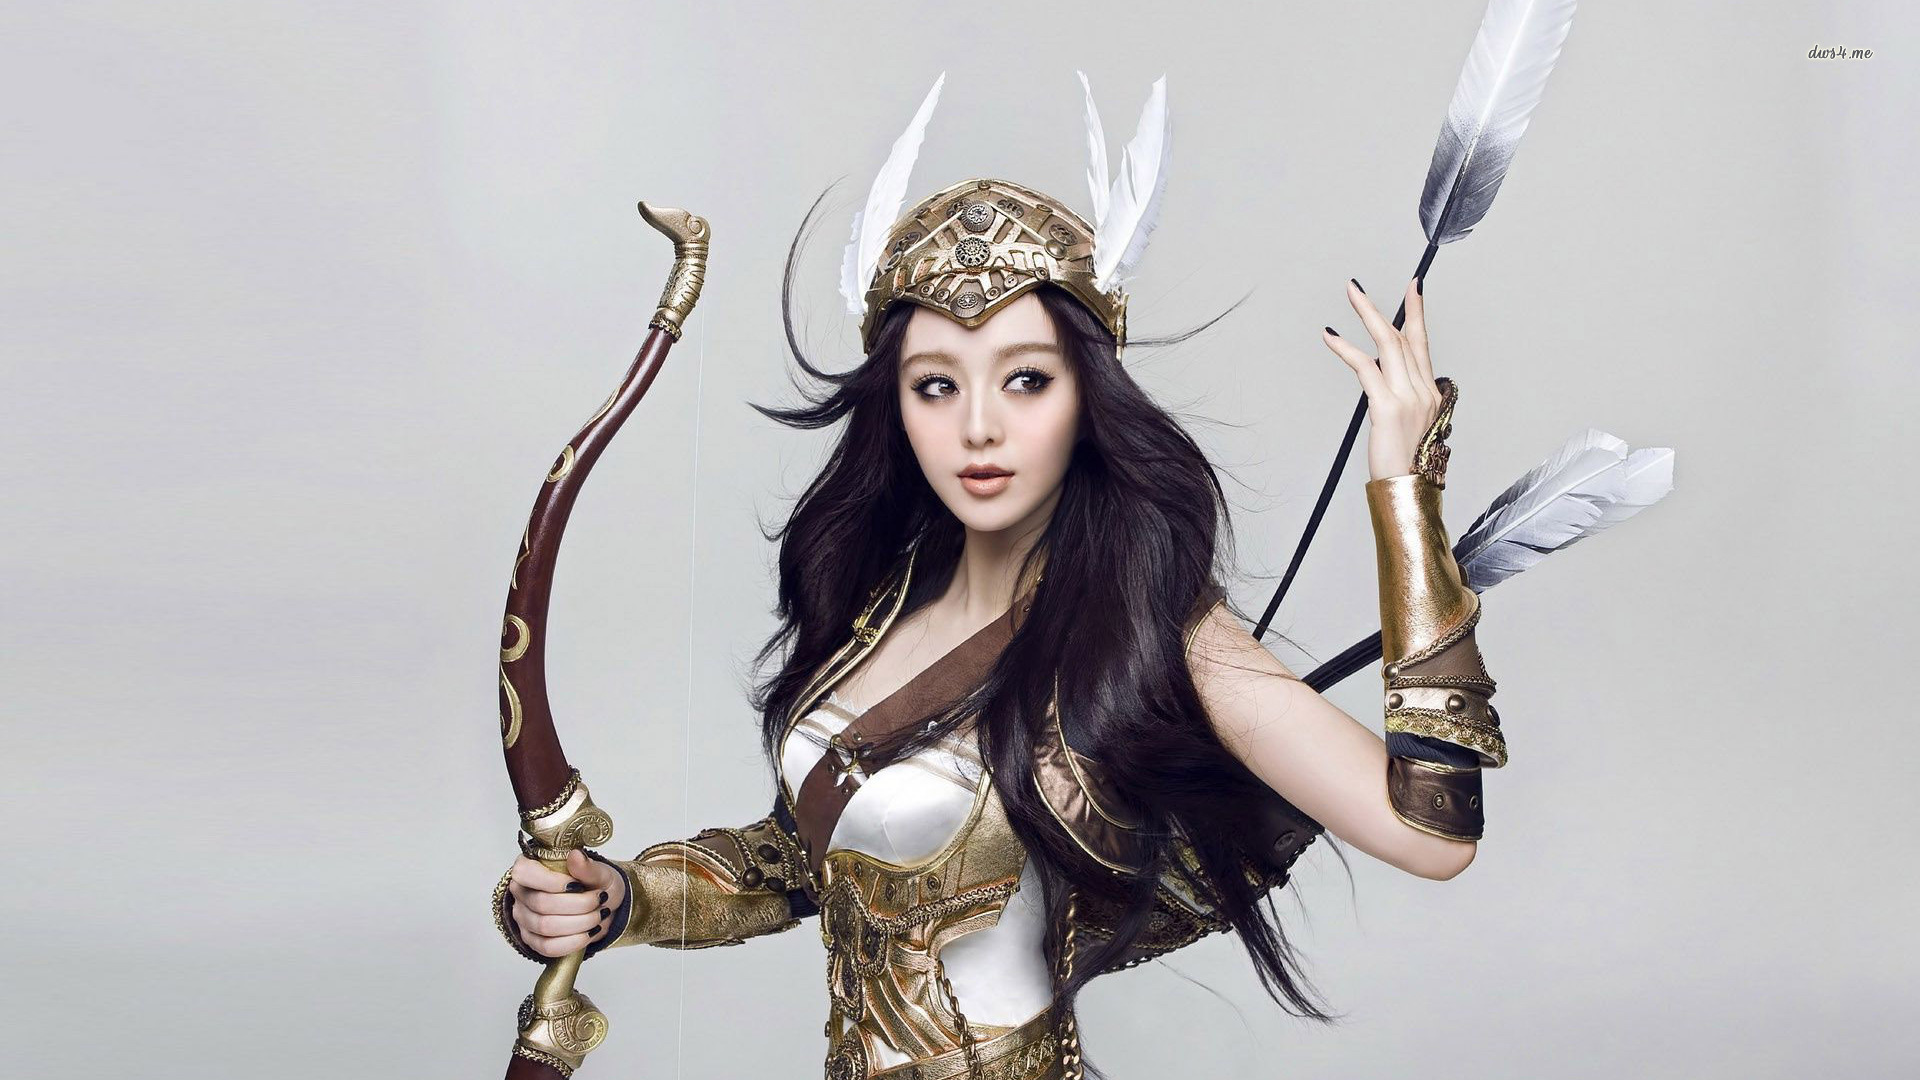 Fantasy Girl Warrior Wallpaper - WallpaperSafari